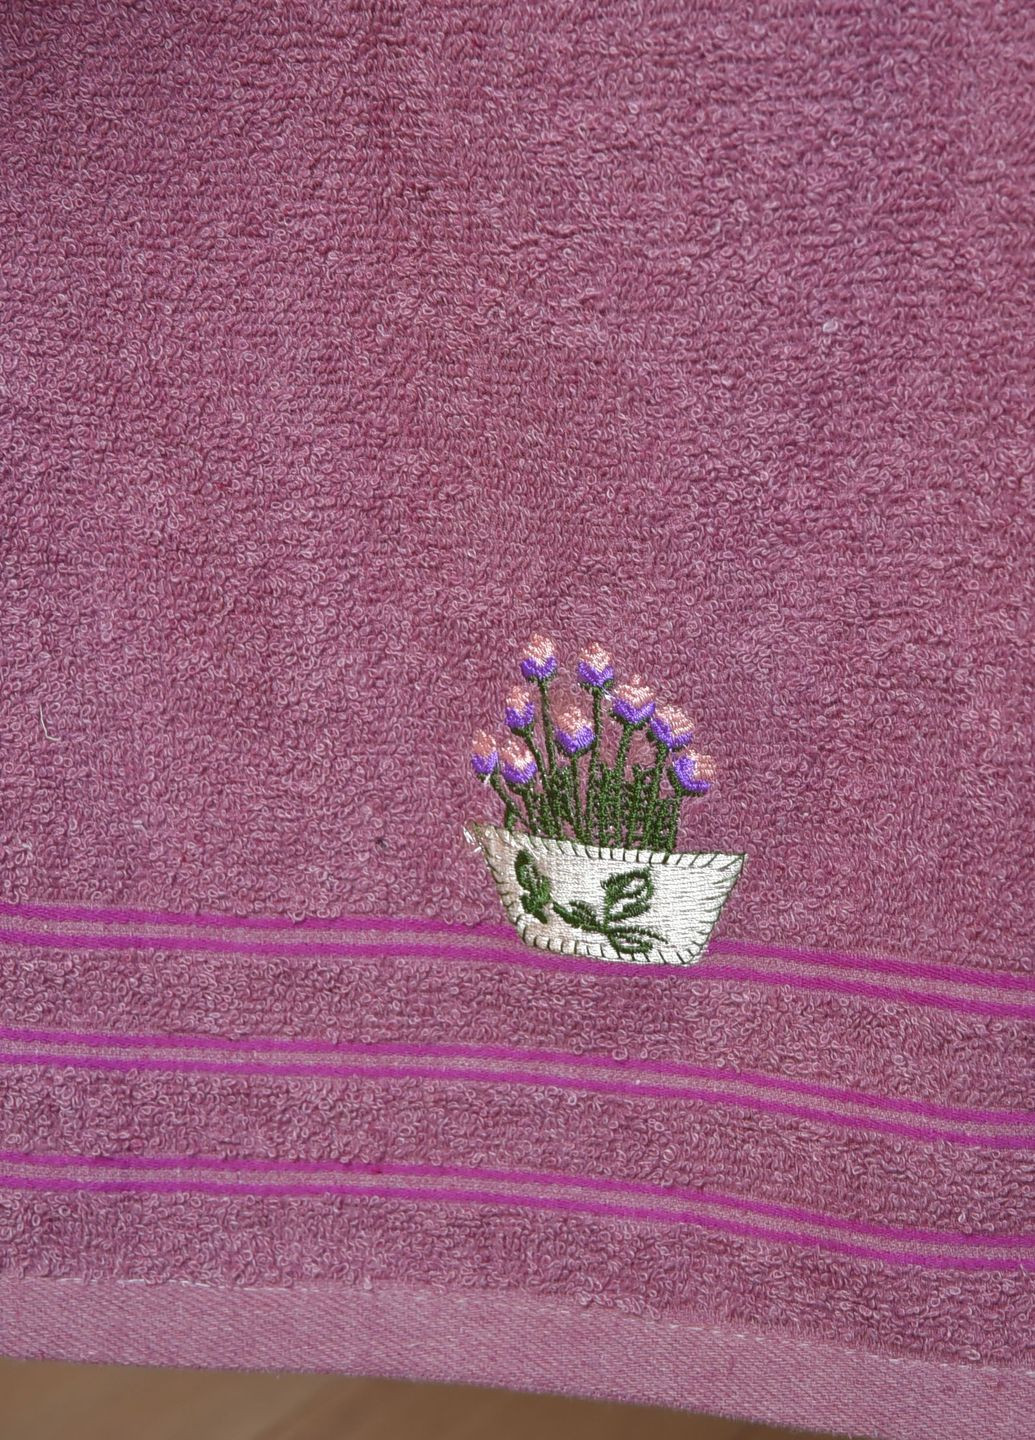 Let's Shop полотенце кухонное махровое фиолетового цвета однотонный фиолетовый производство - Китай